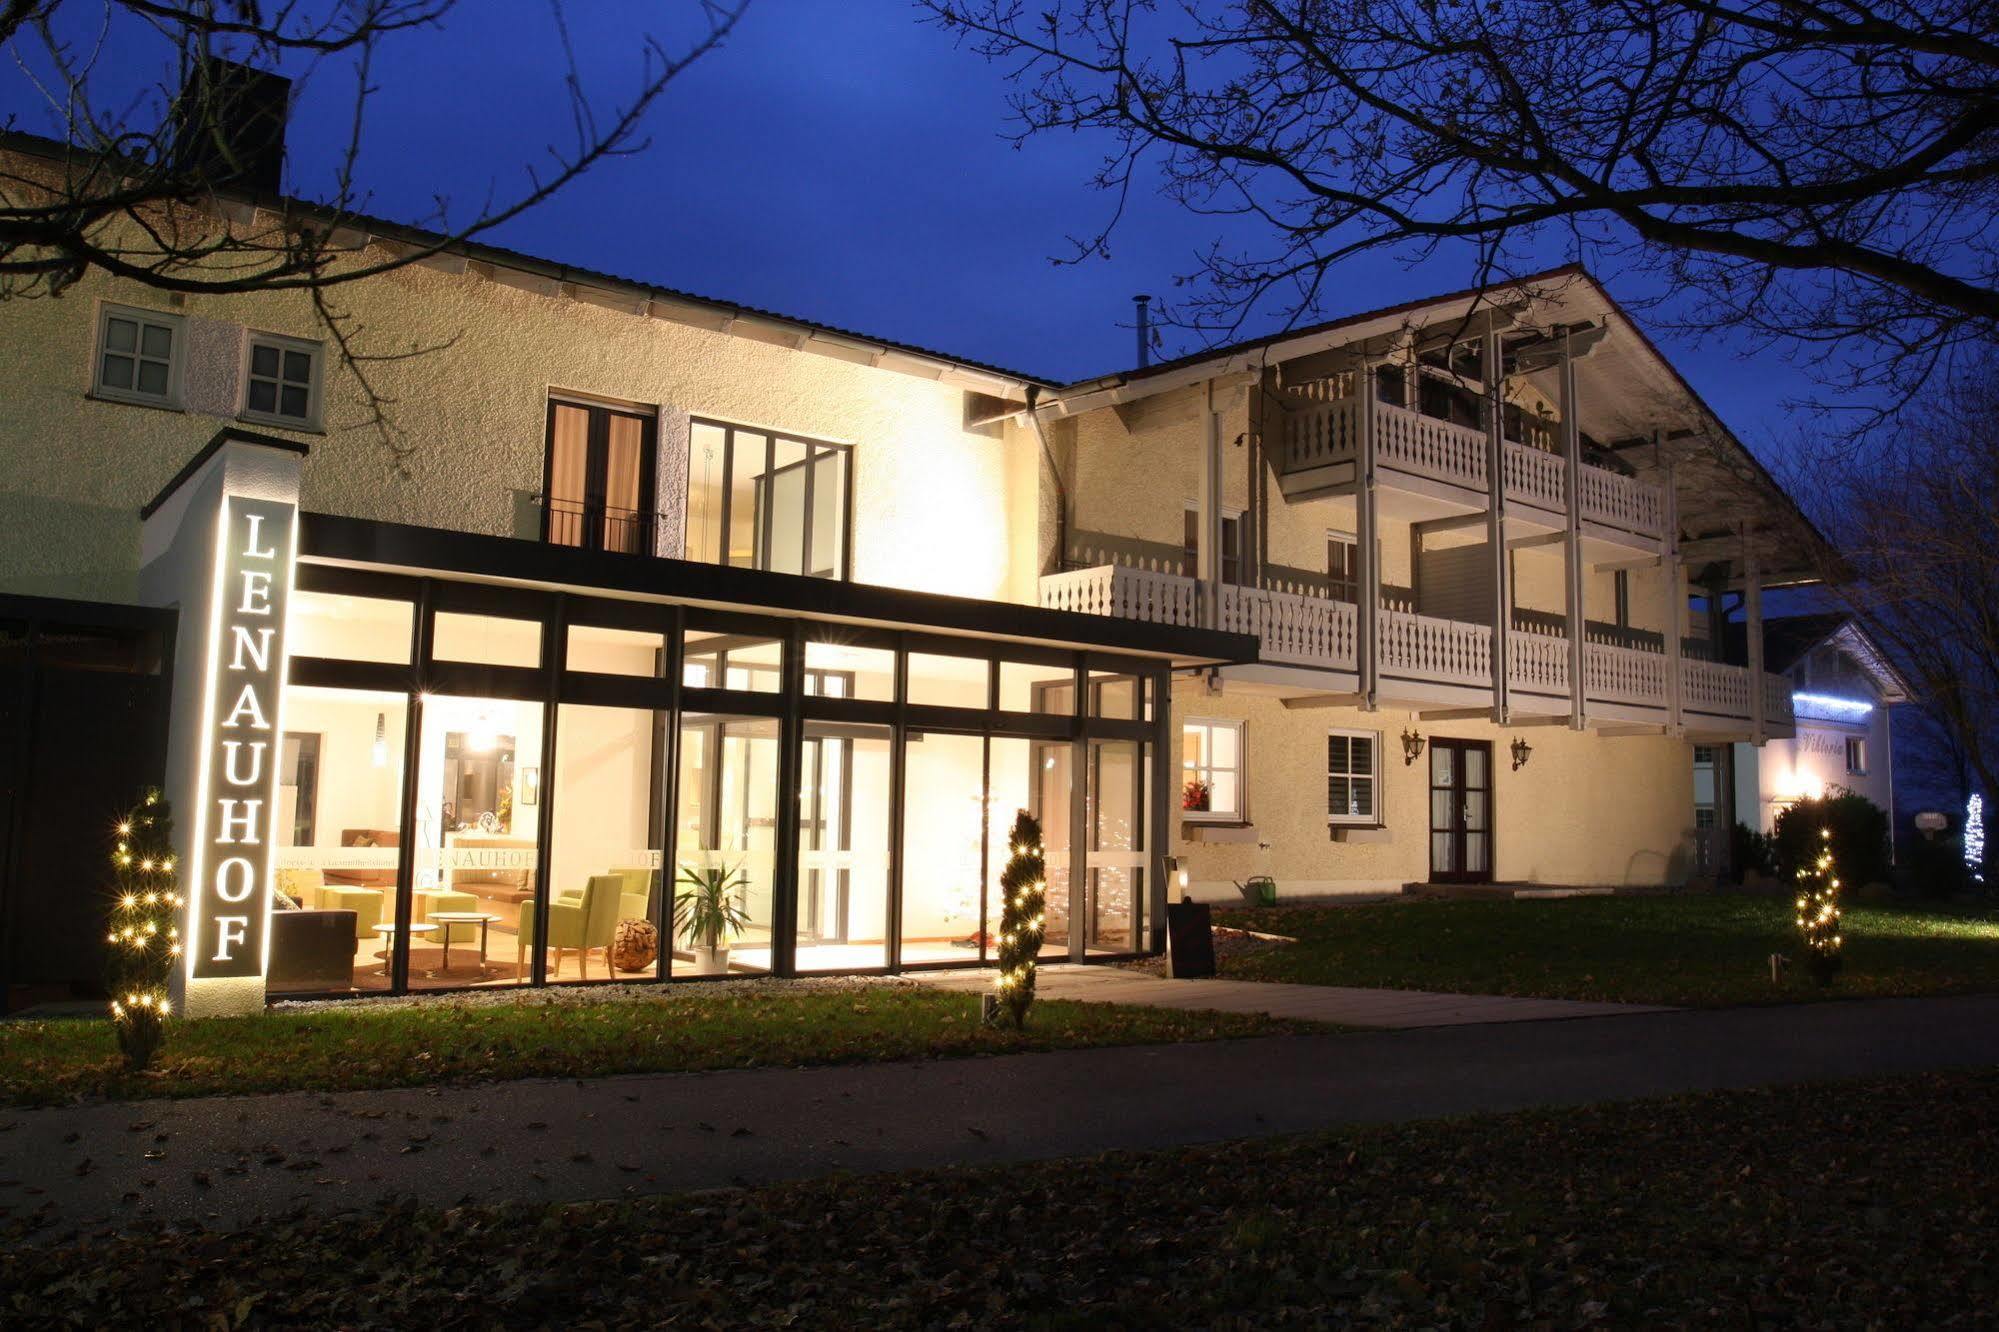 Hotel Lenauhof Bad Birnbach Esterno foto